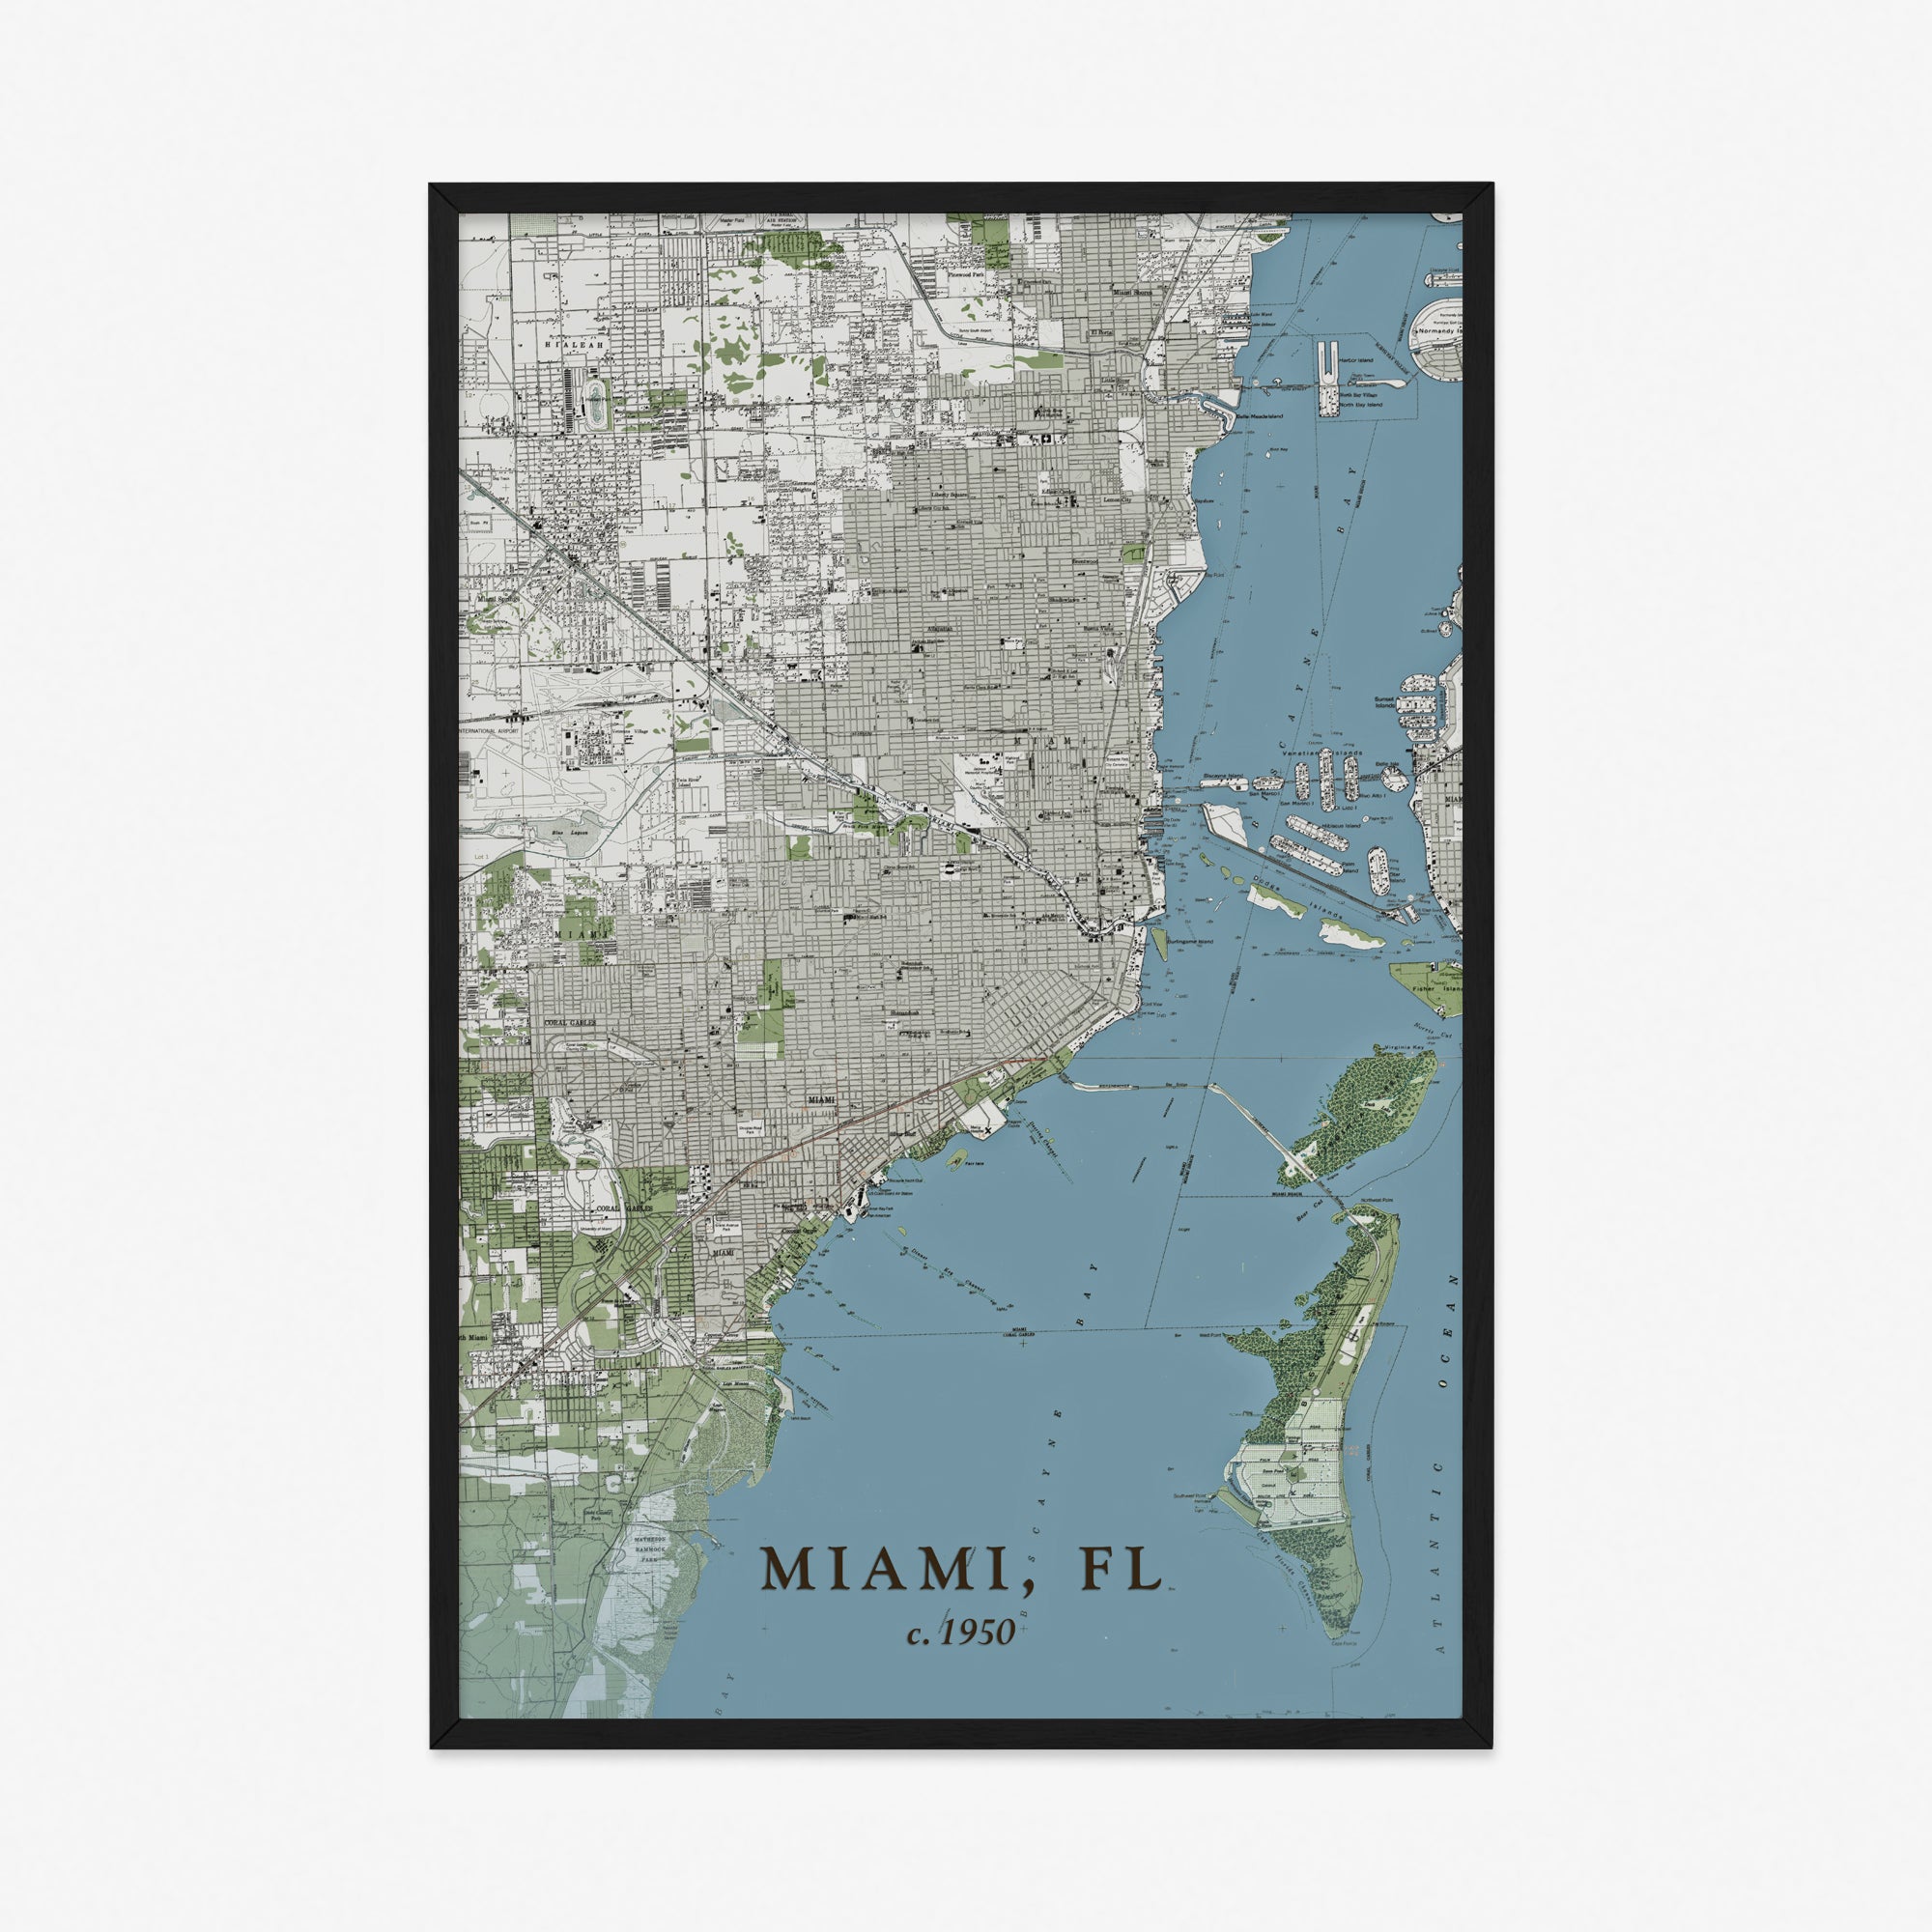 Miami, FL - 1950 Topographic Map